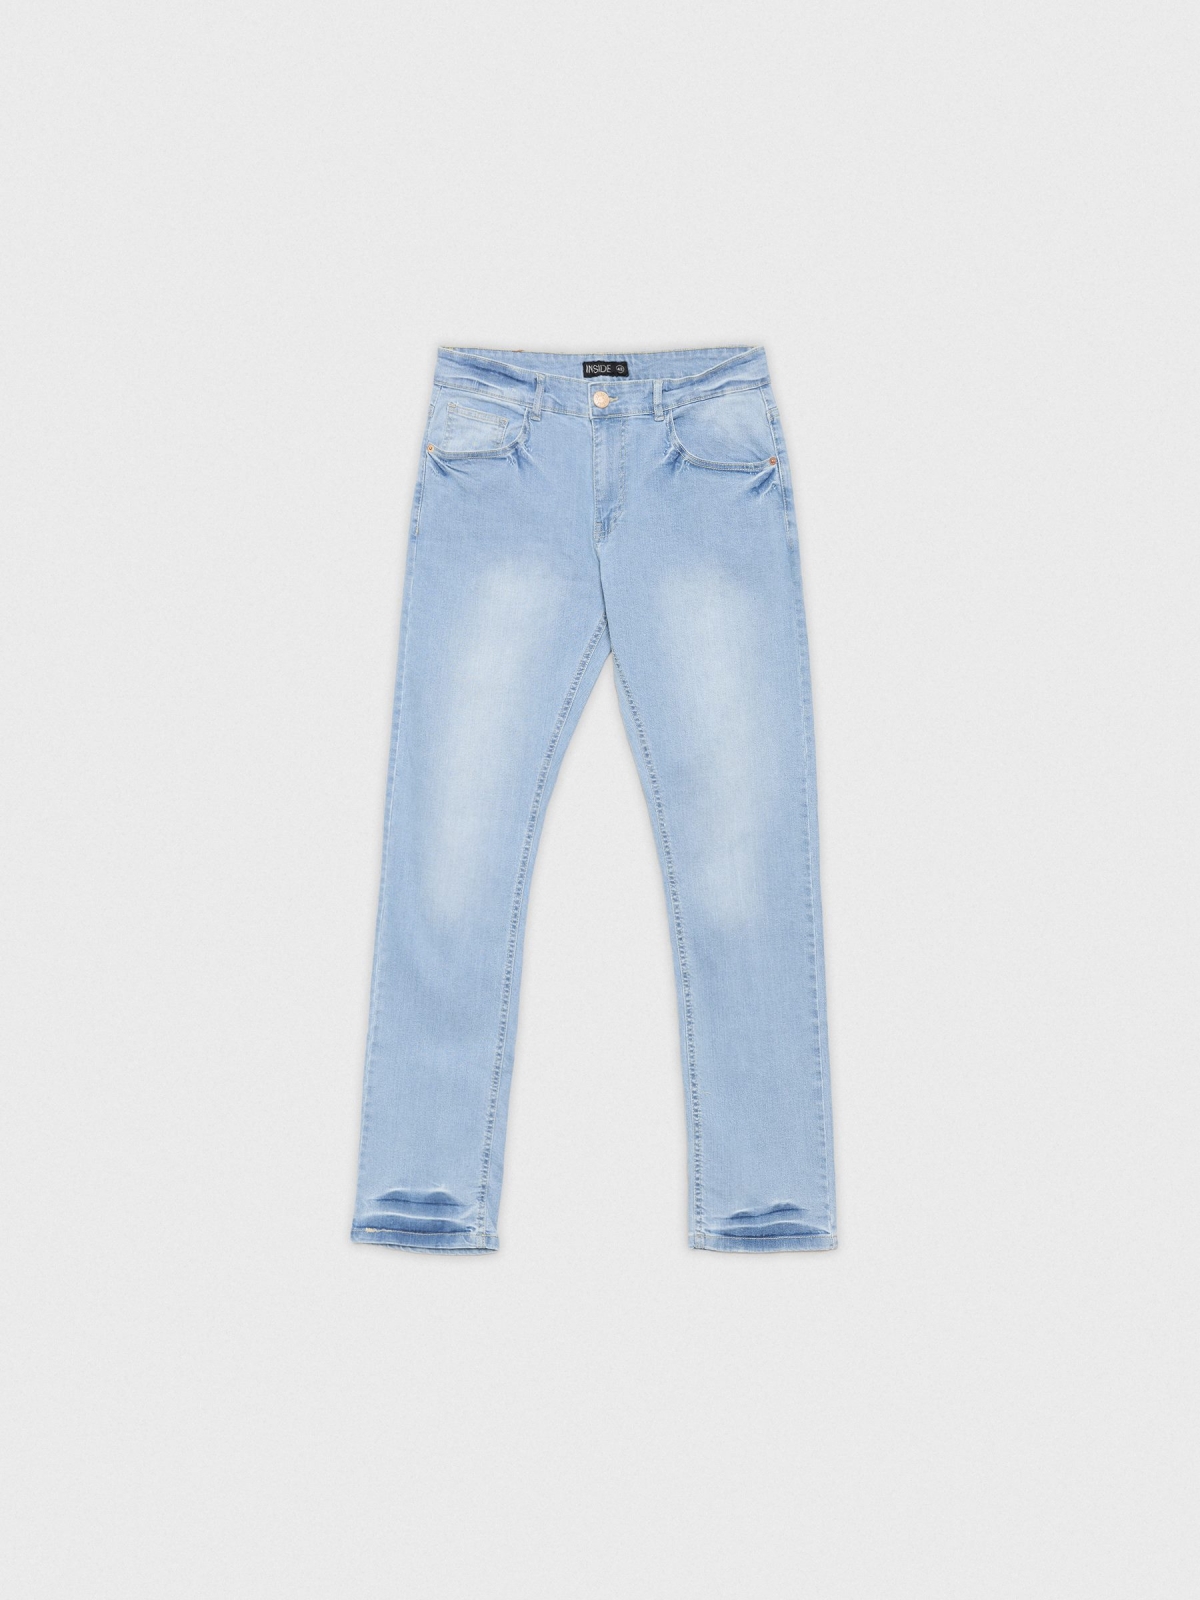  Jeans básicos azul claro azul